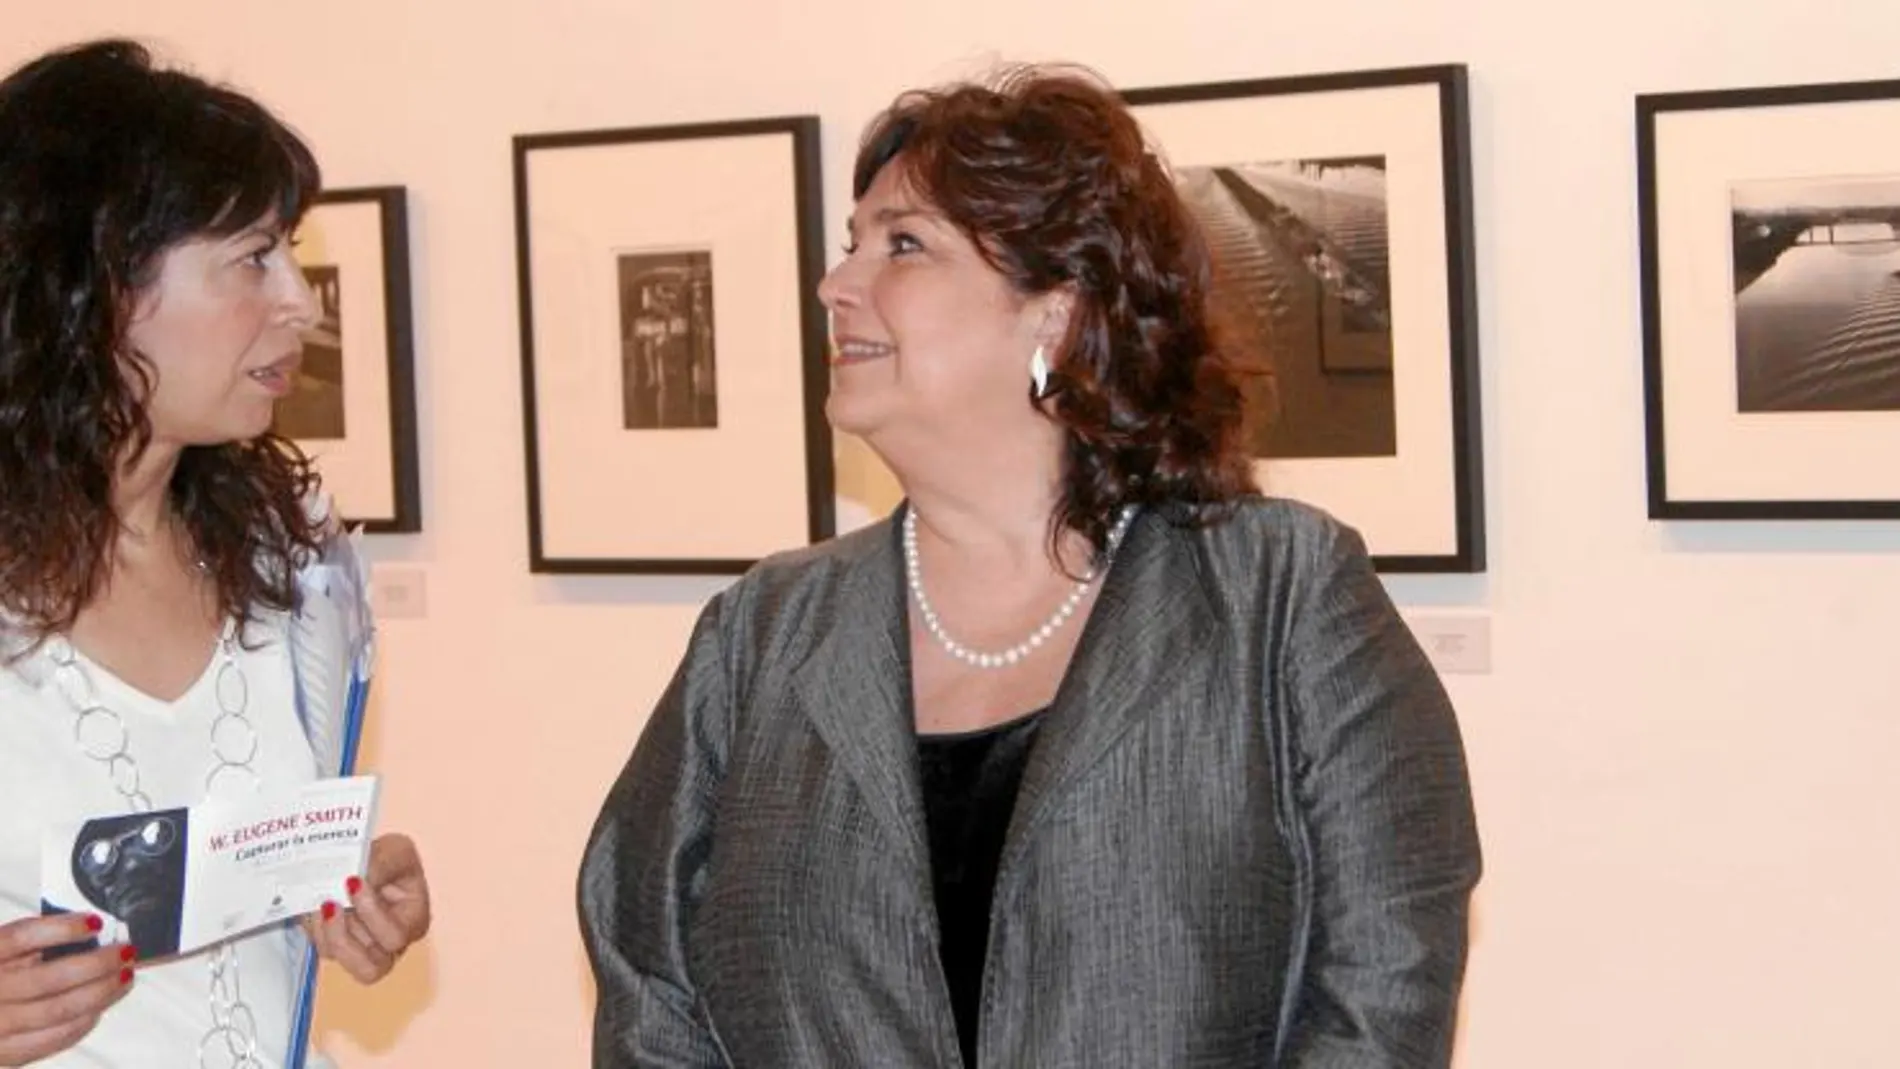 La concejala de Cultura y Turismo, Ana Redondo, presenta «Capturar la imagen», de W. Eugene Smith, junto a la comisaria de la exposición, Enrica Viganò